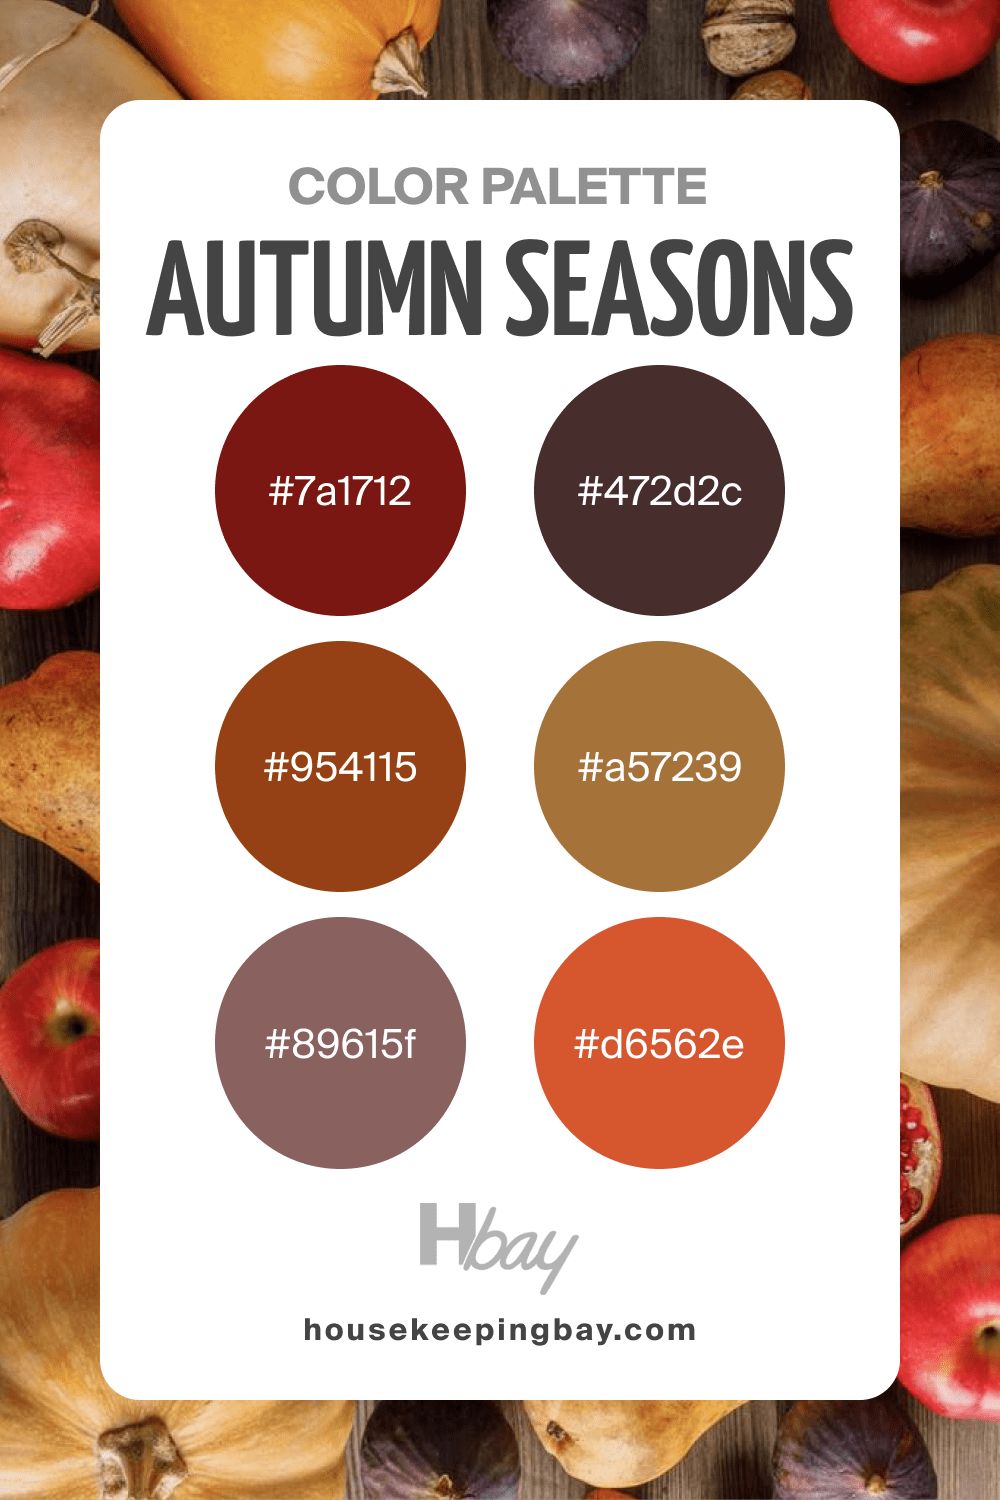 Autumn color palette seasons